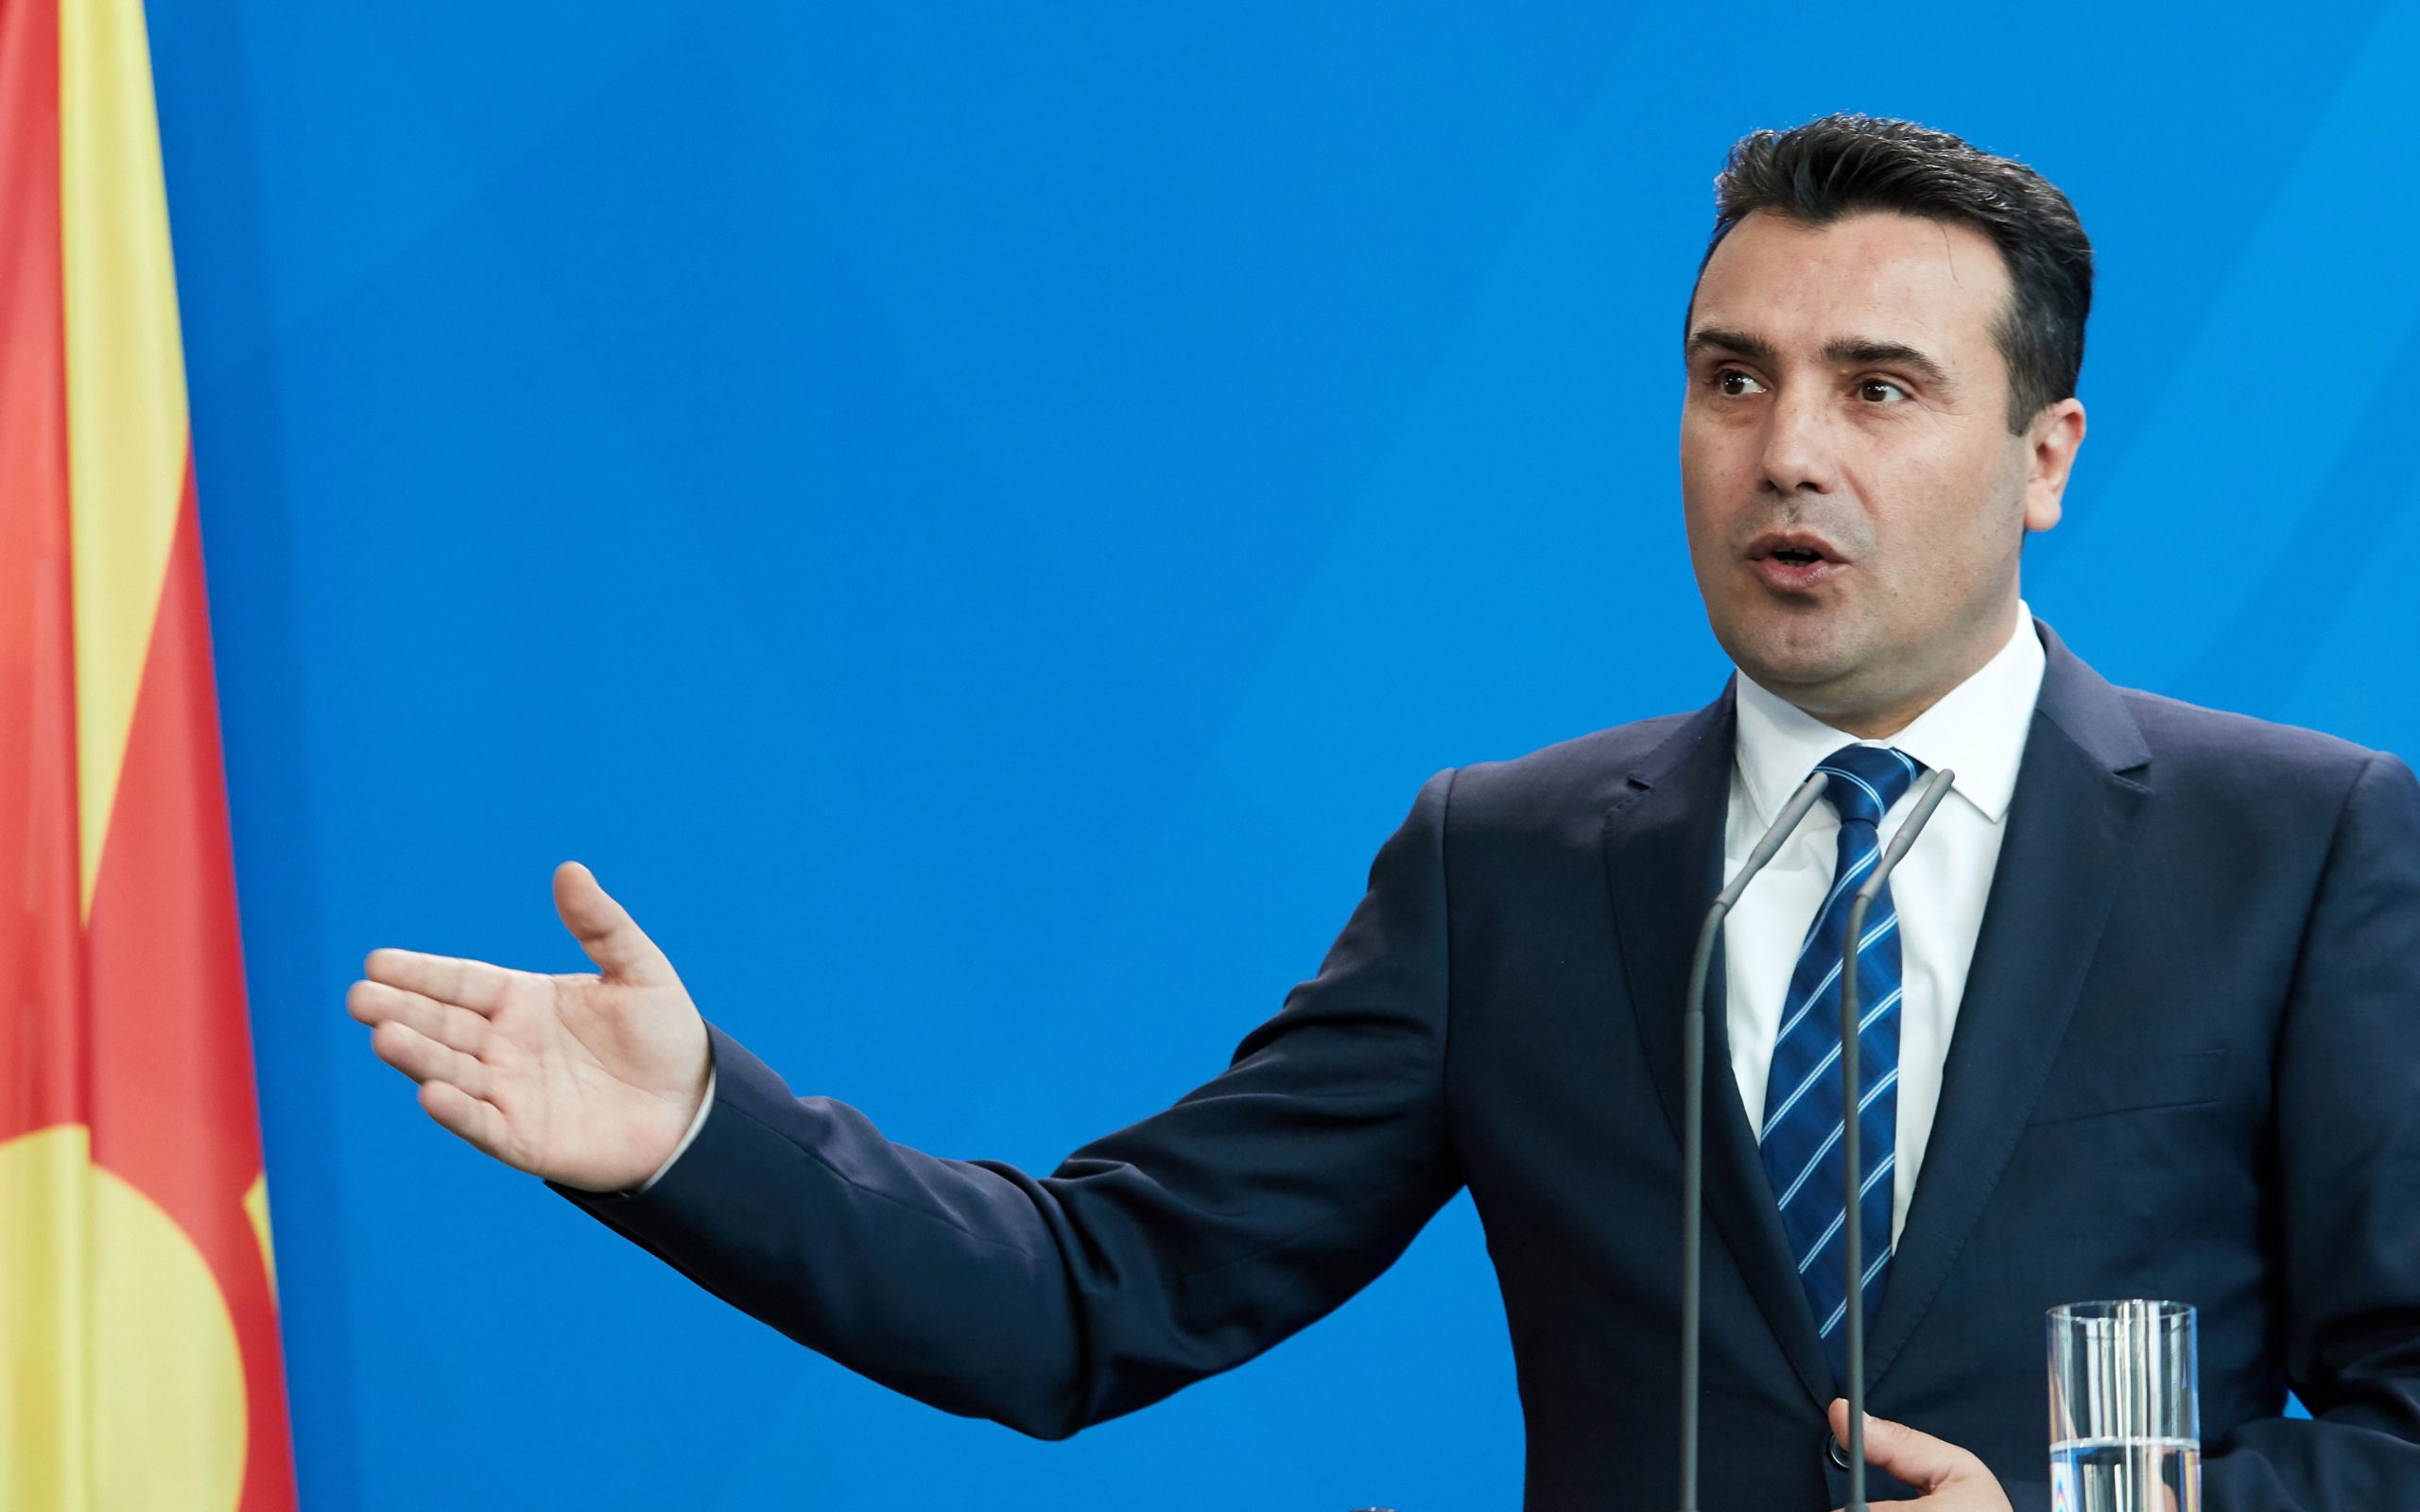 Ζ.Zάεφ: «Με την Συμφωνία των Πρεσπών η “μακεδονική” γλώσσα θα διδάσκεται στην Ελλάδα στους “Μακεδόνες του Αιγαίου”»